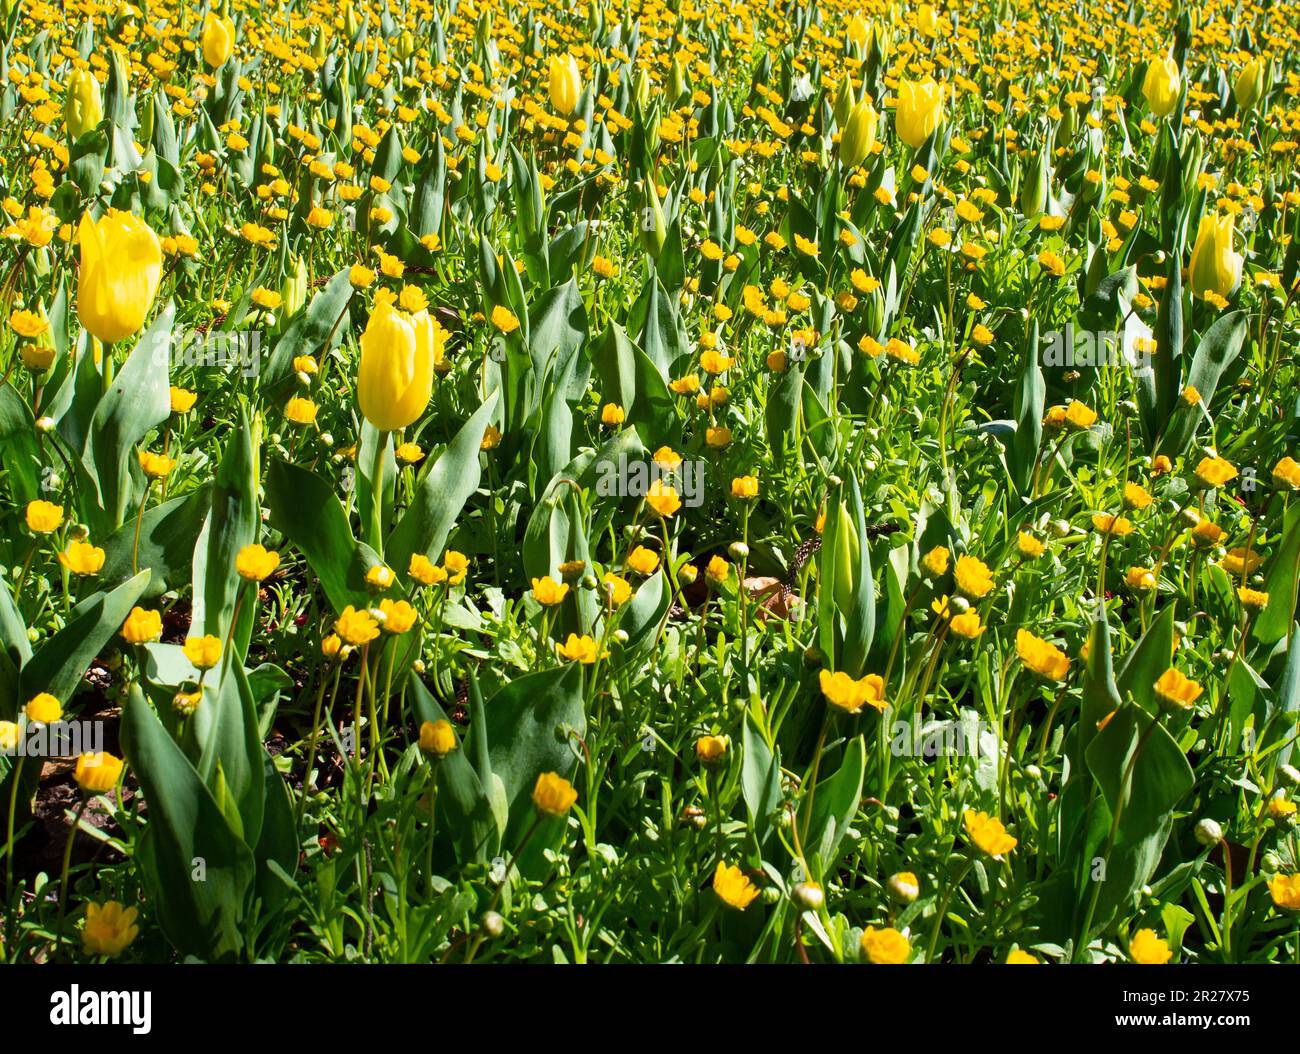 Letto da giardino di tulipani gialli Foto Stock